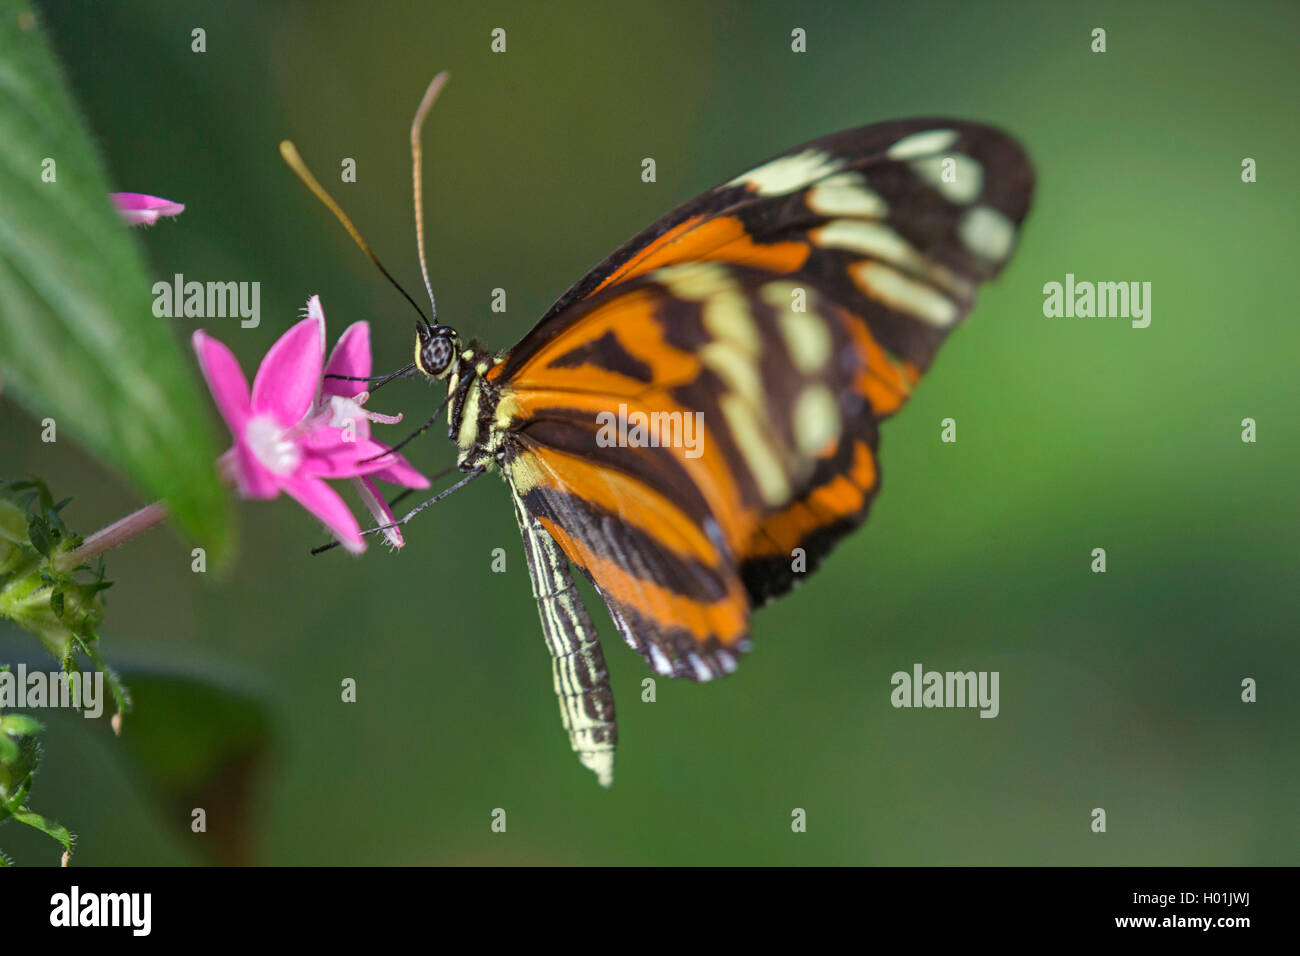 Ismenius Tigre, Tigre (Heliconius ismenius Heliconian), chupando el néctar de una flor, vista lateral Foto de stock